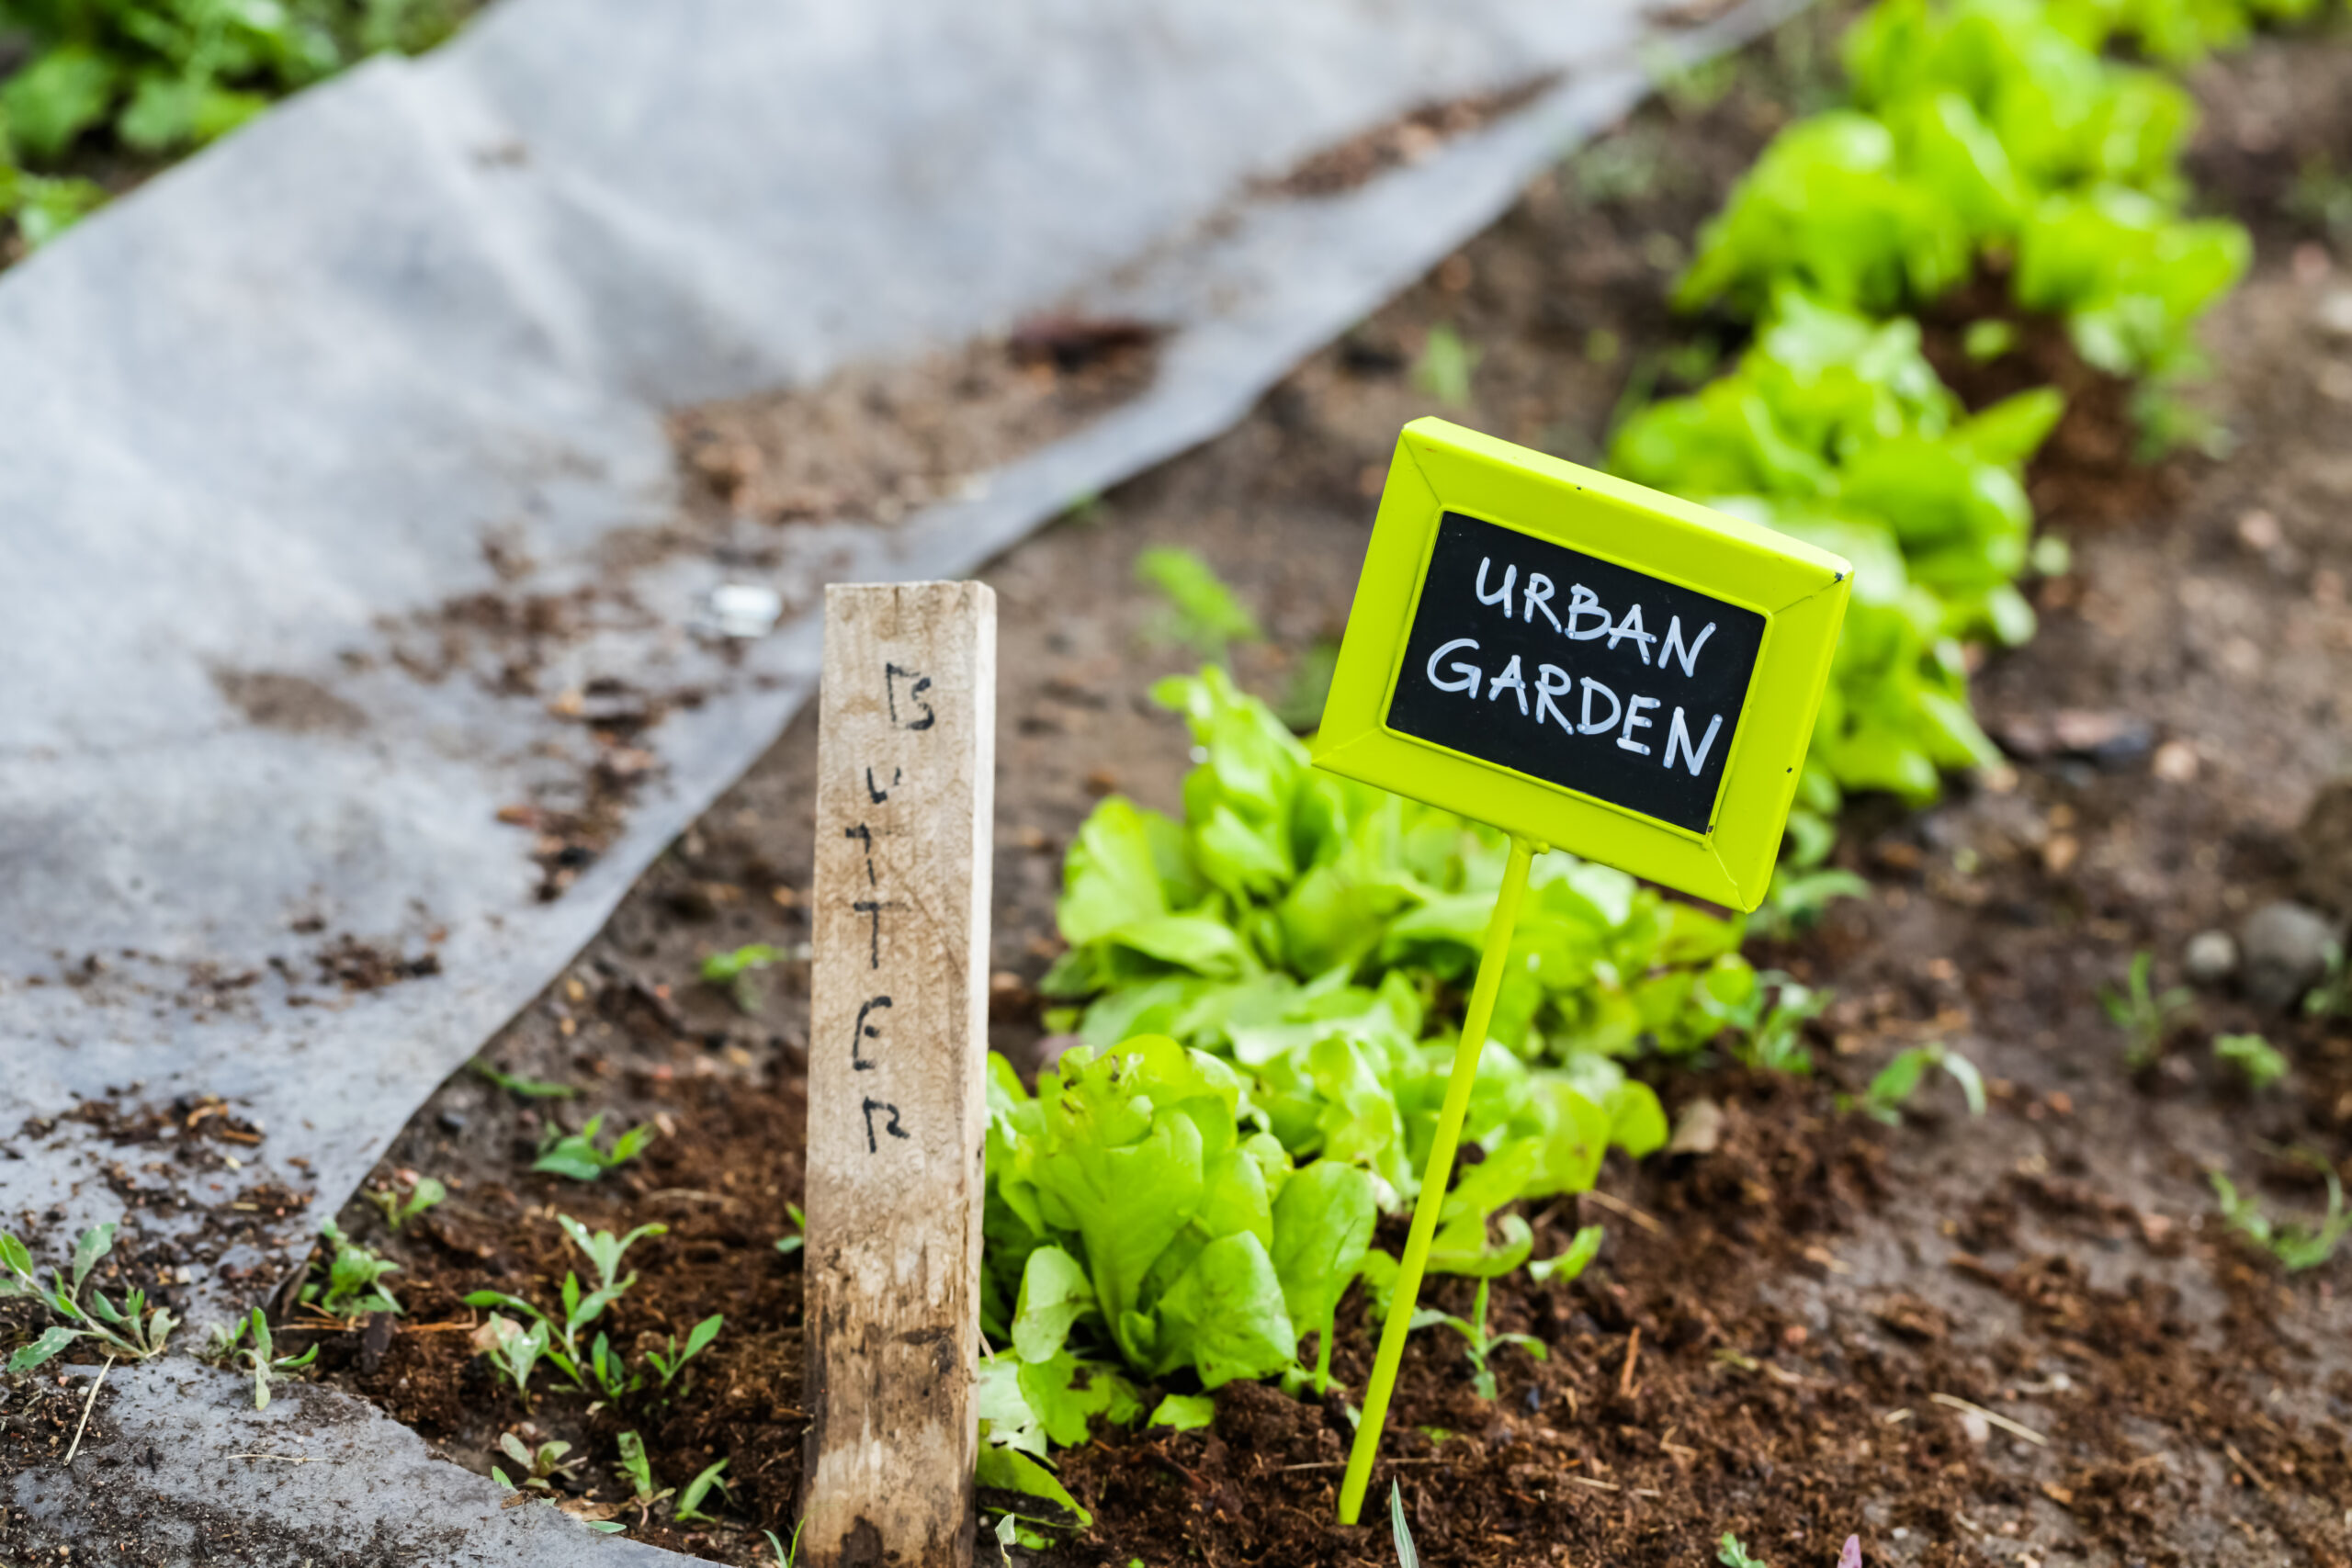 Gemüsebeet mit Salat und einem Schild mit der Aufschrift "Urban Gardining"